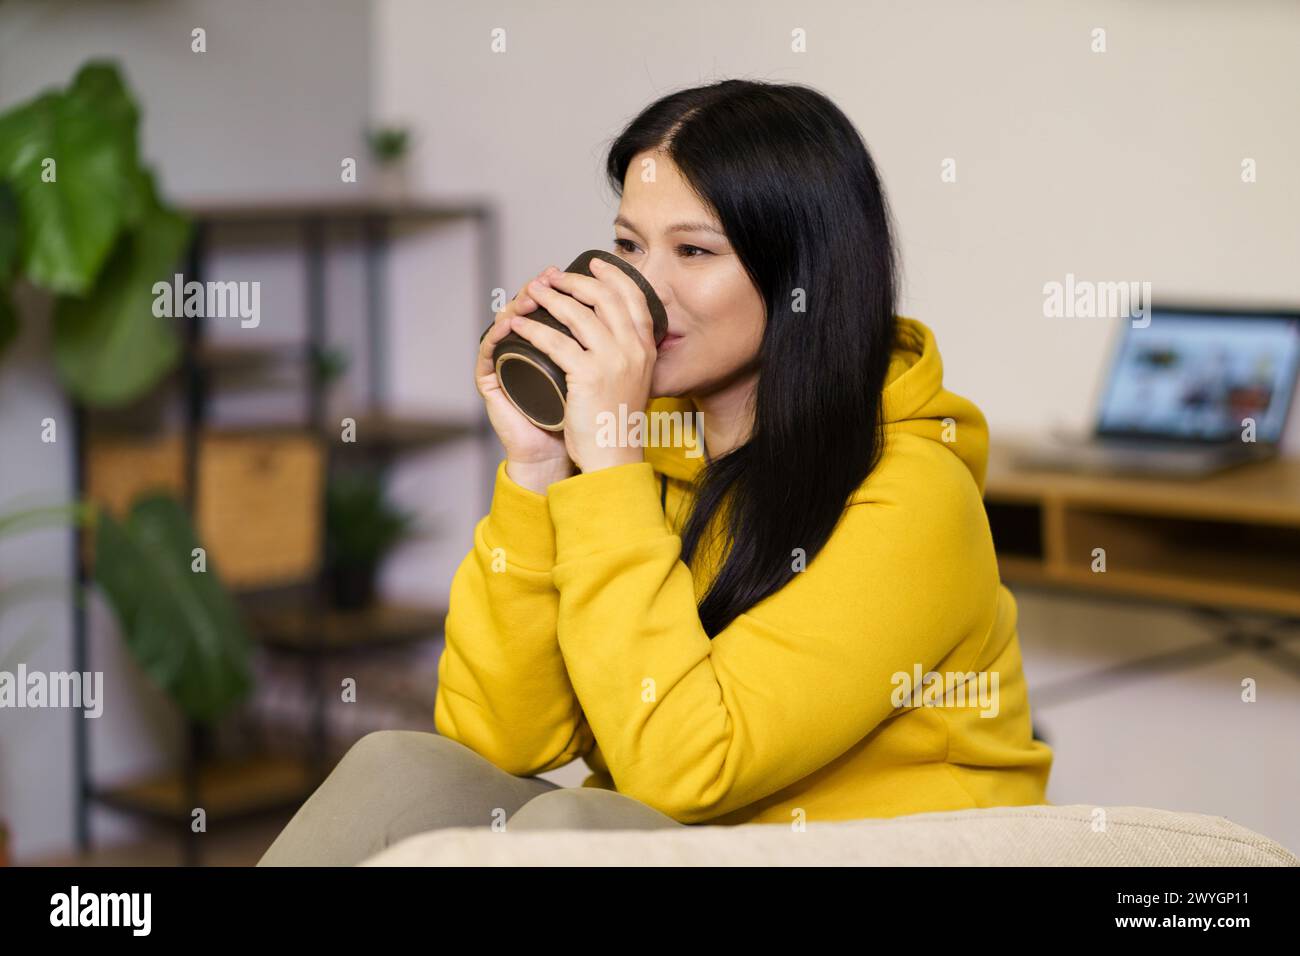 Une femme en sweat à capuche jaune boit du café. Elle sourit et elle profite de sa boisson Banque D'Images